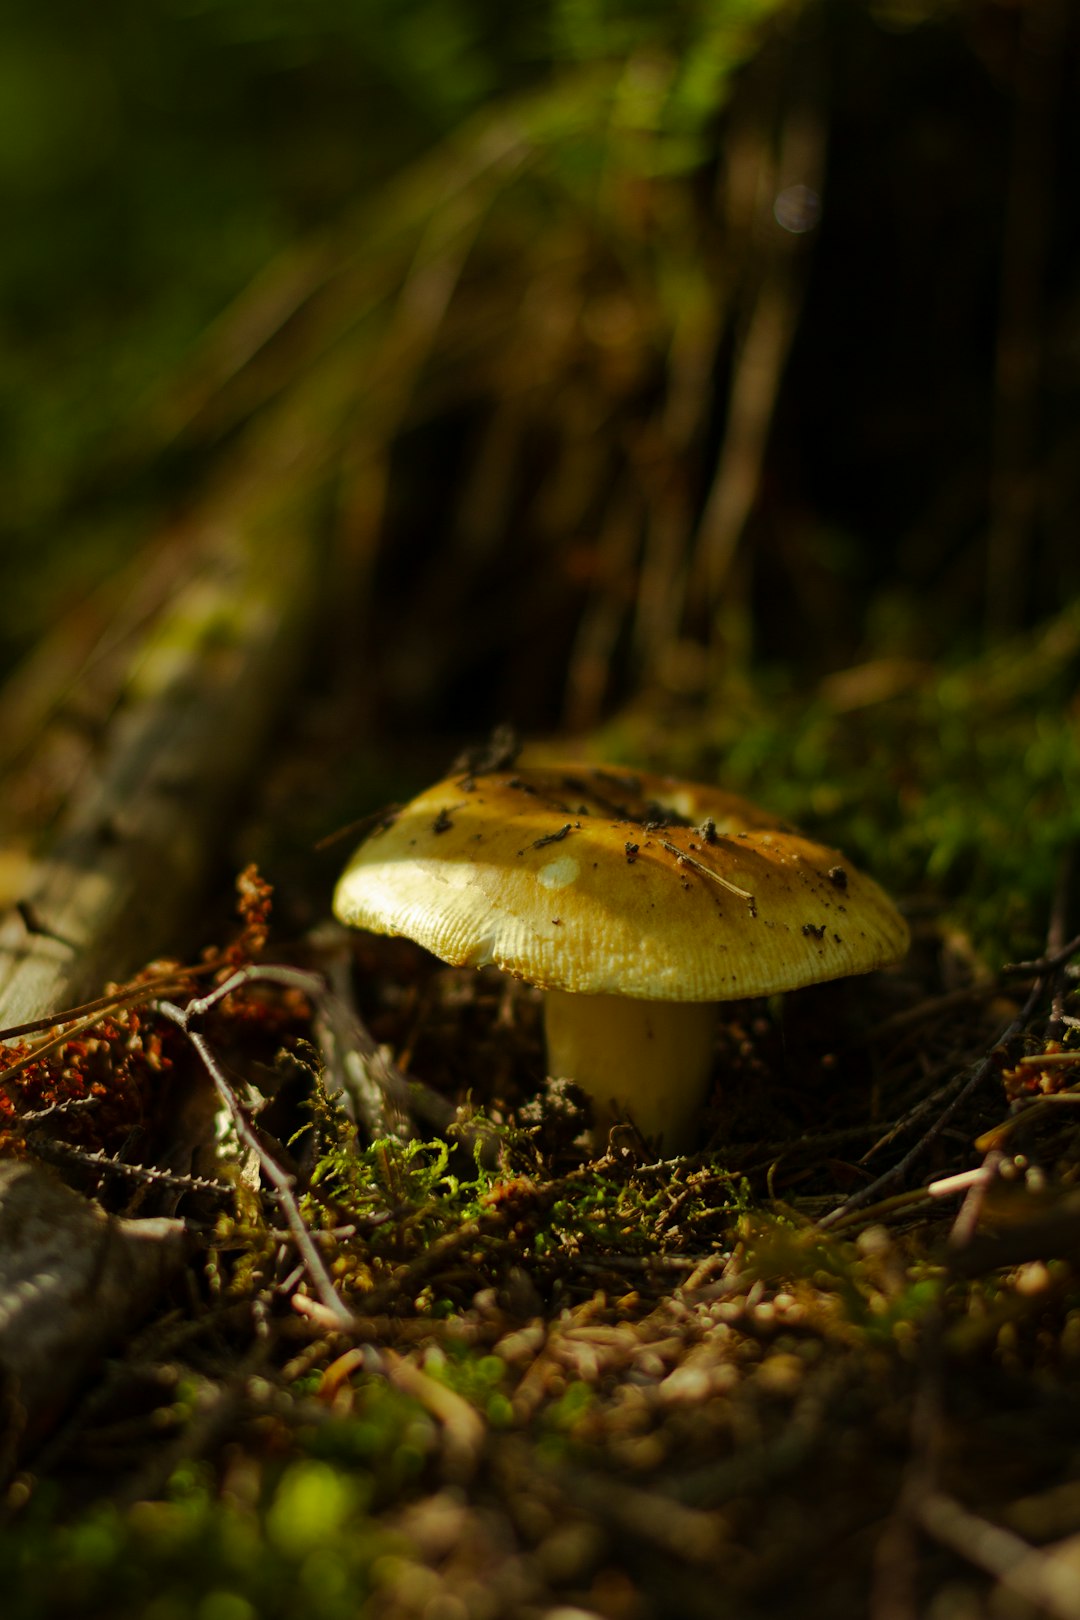 brown mushroom on brown dried leaves